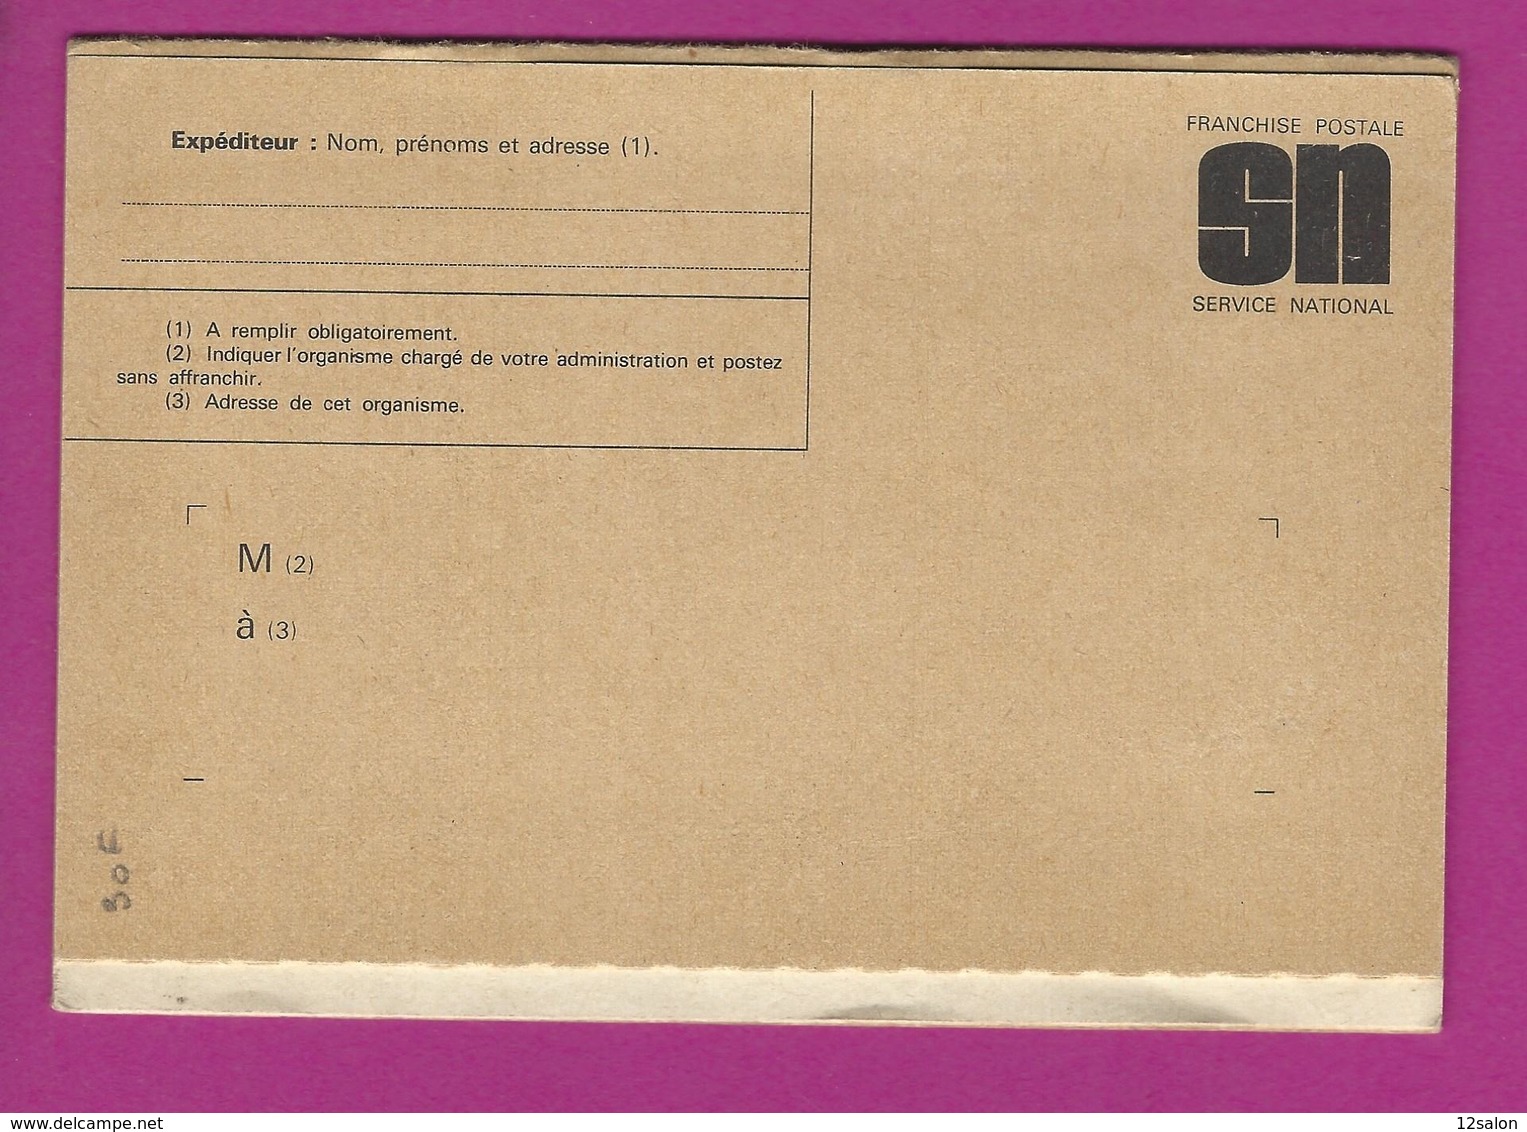 MEMENTO DU RESERVISTE 1974 - Documentos